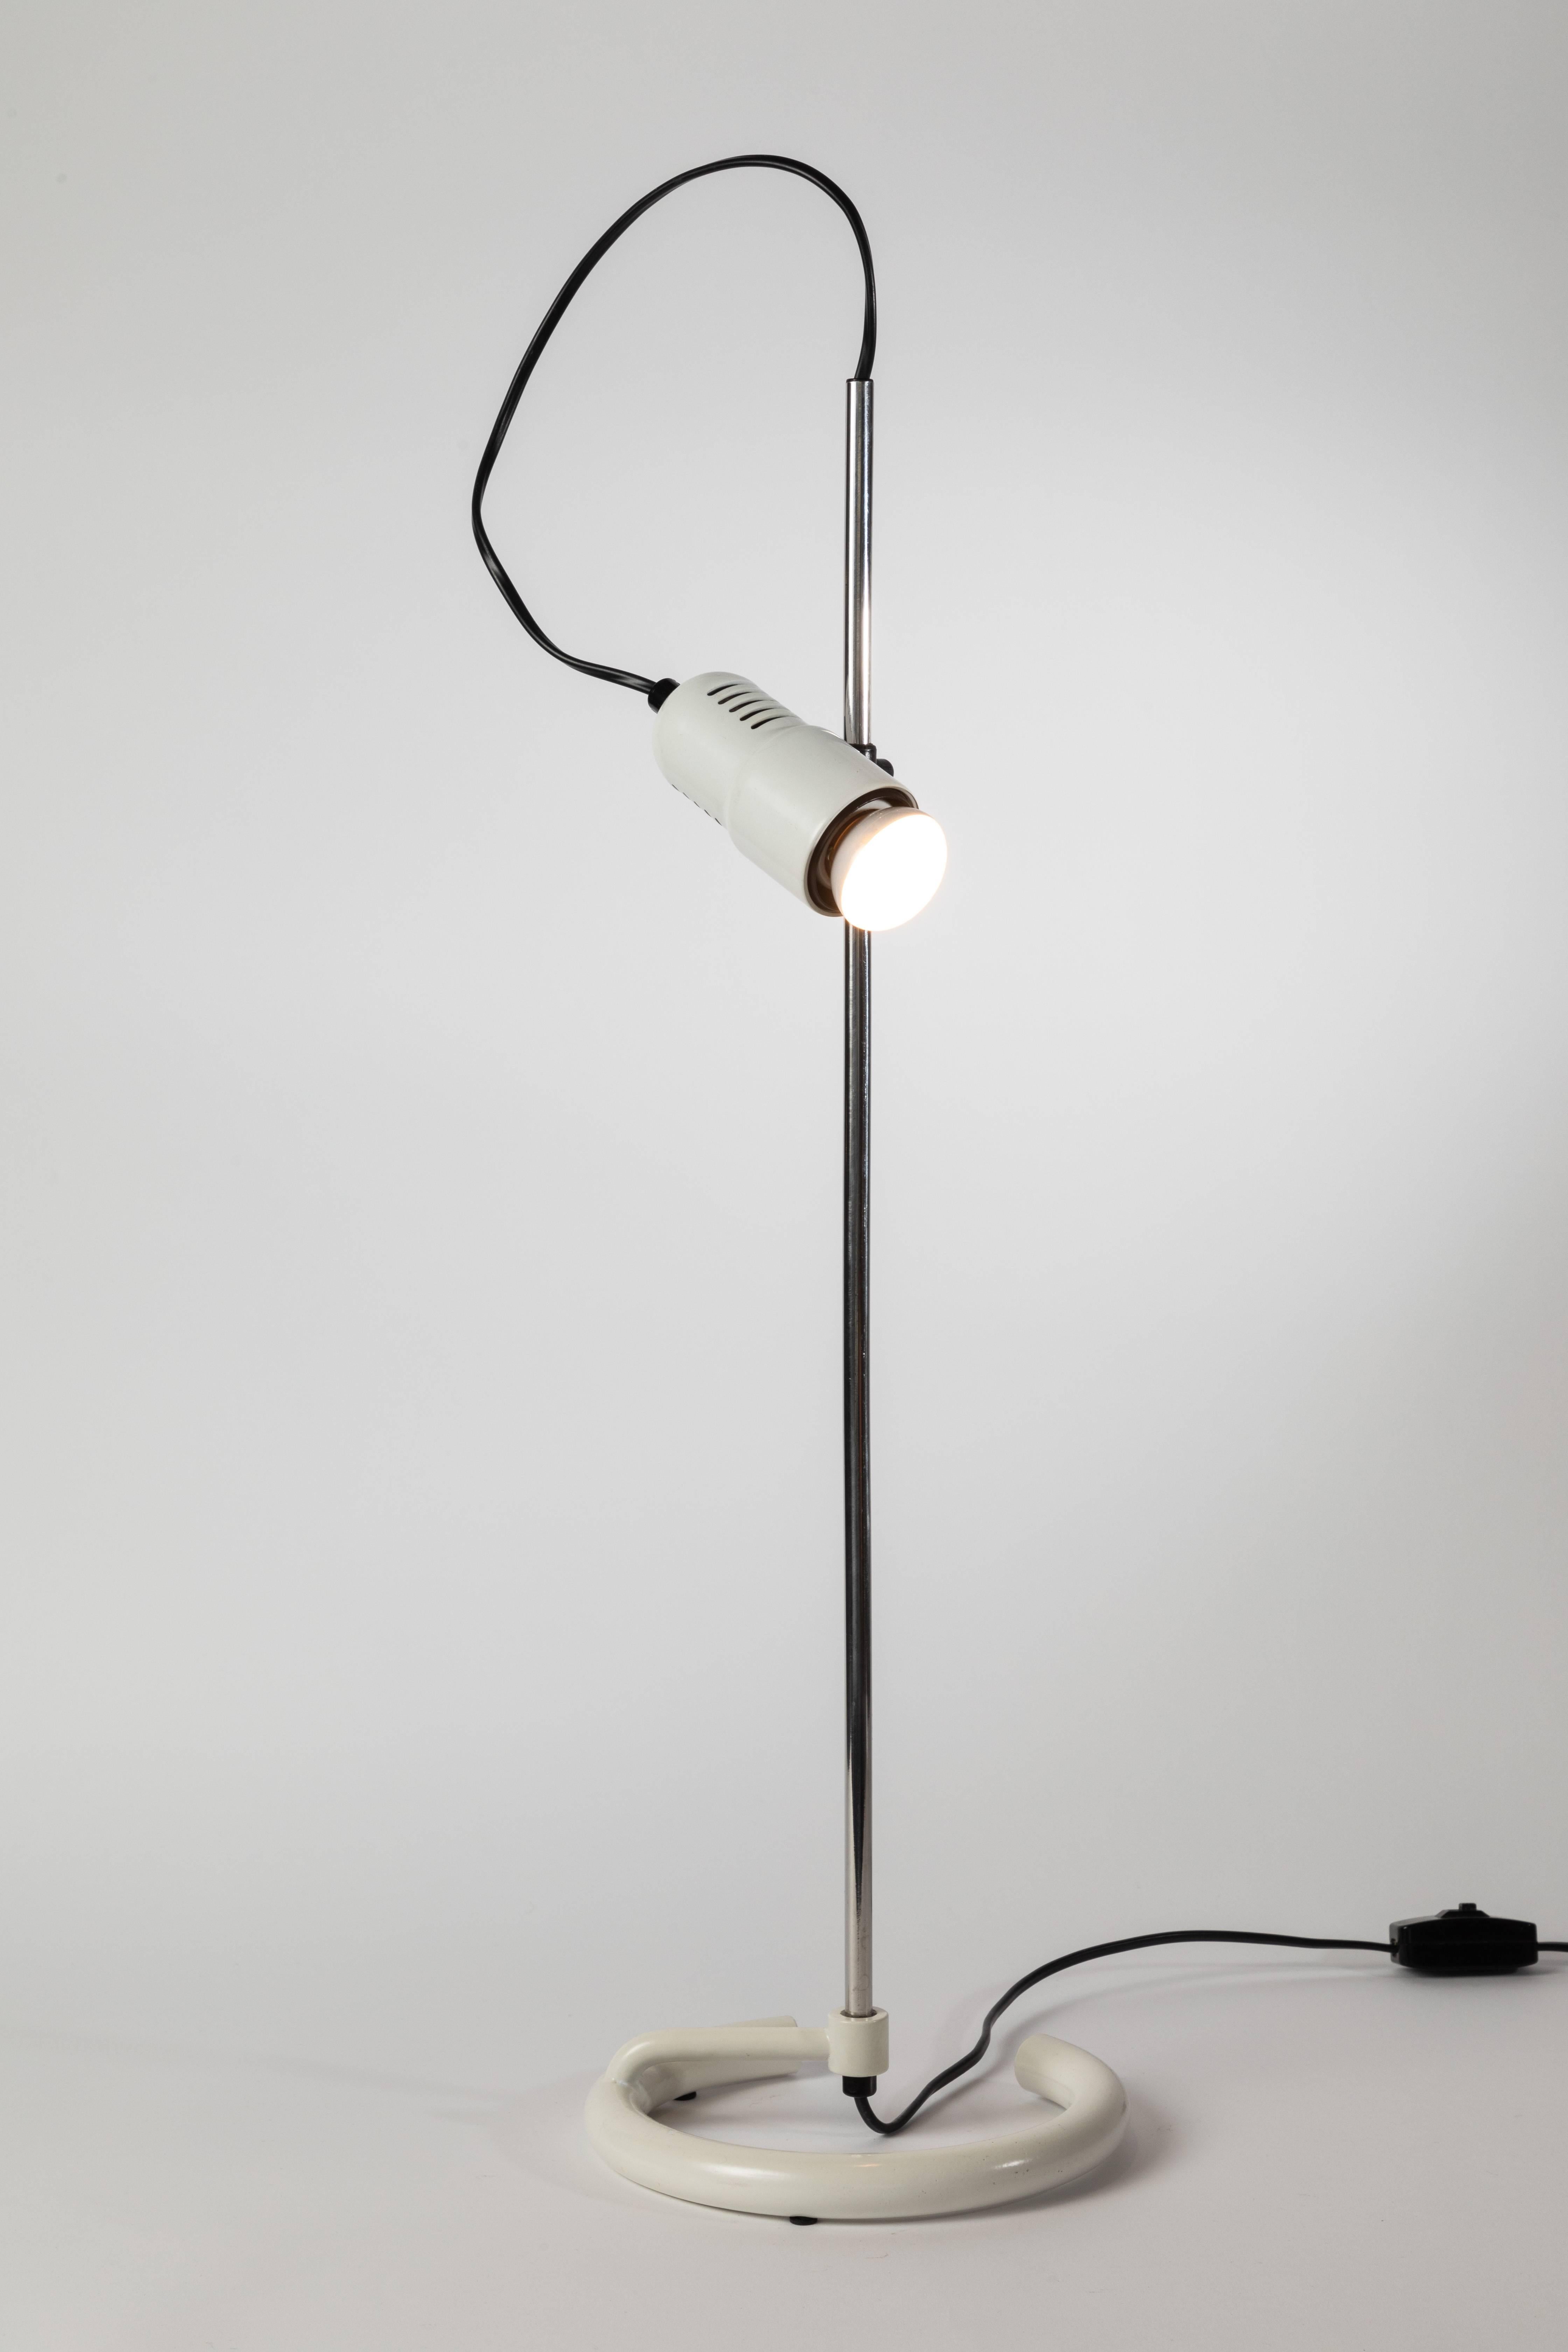 lampe de table Elio Martinelli des années 1960 pour Martinelli Luce. Un design minimaliste italien typique des années 1960, exécuté en chrome et en métal émaillé blanc, à la manière des luminaires emblématiques de Joe Colombo pour O-Luce. La lumière